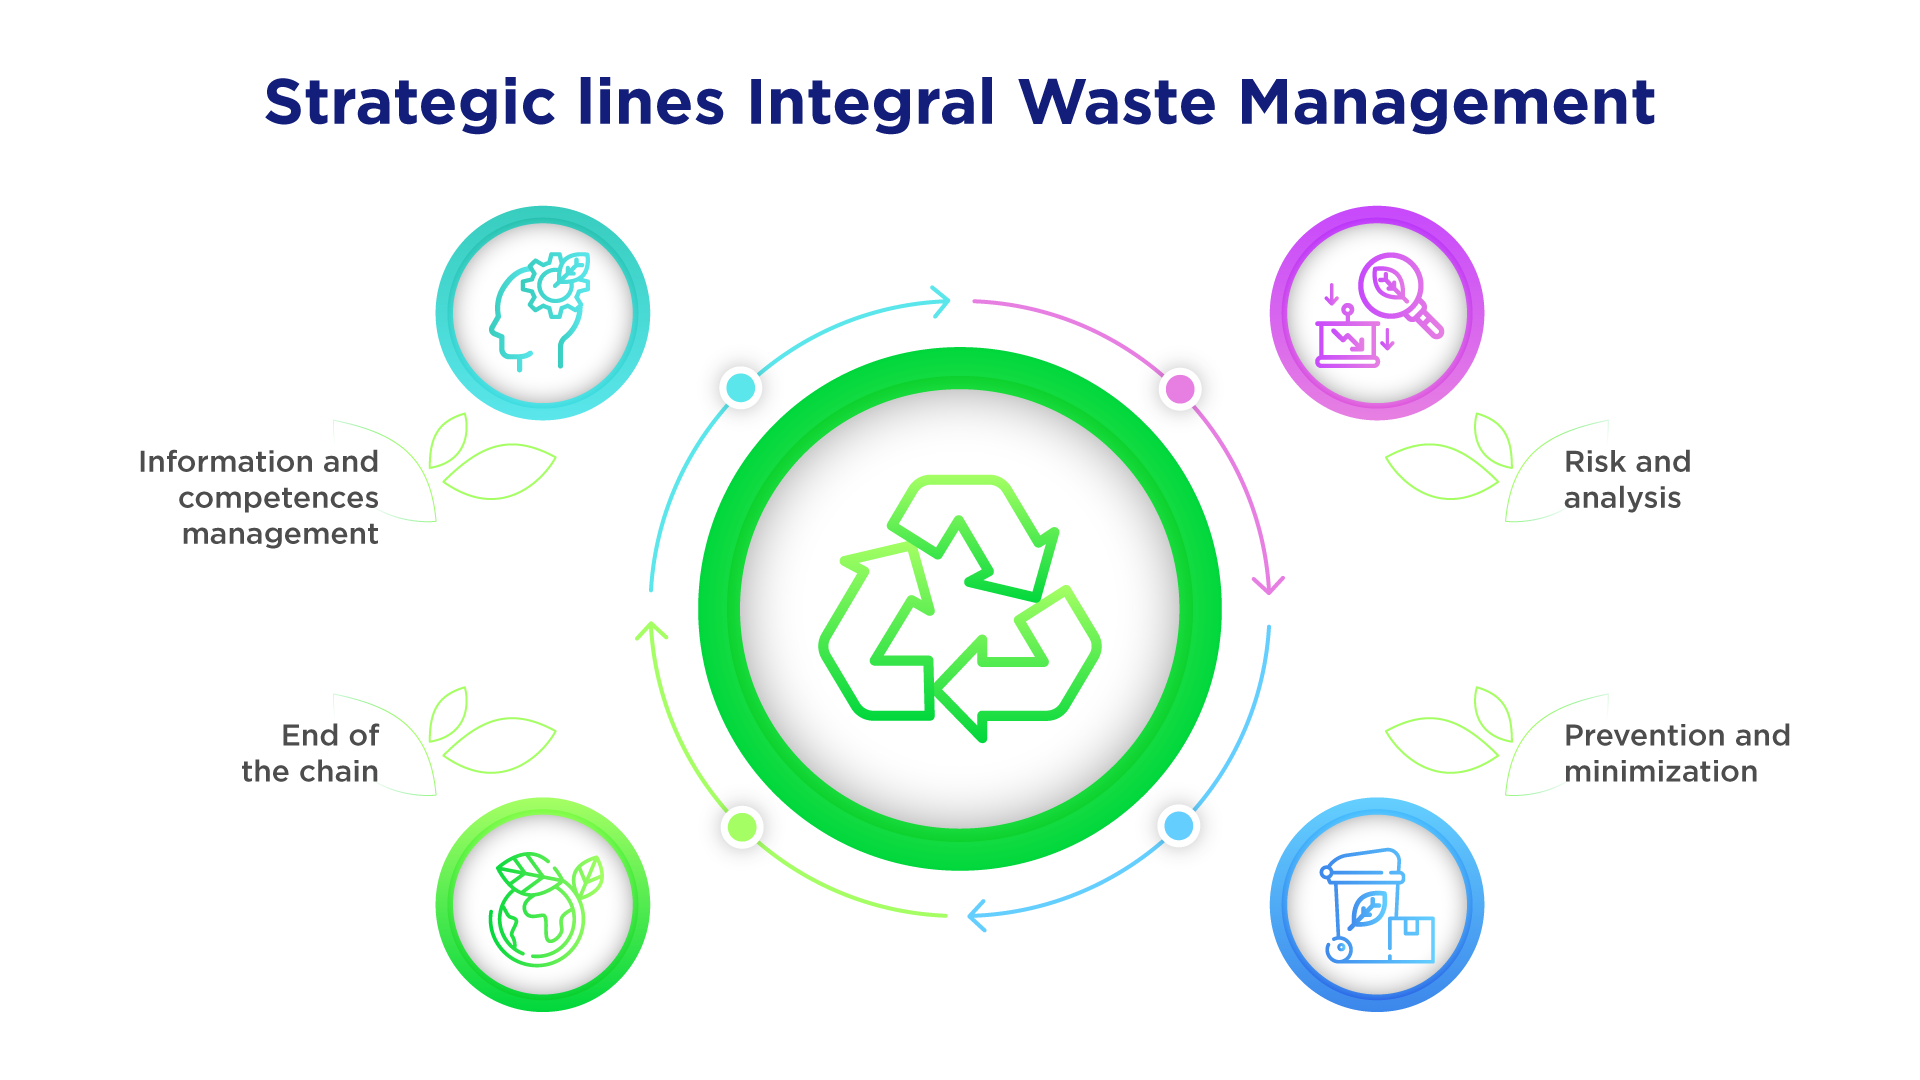 Strategic lines Integral Waste Management